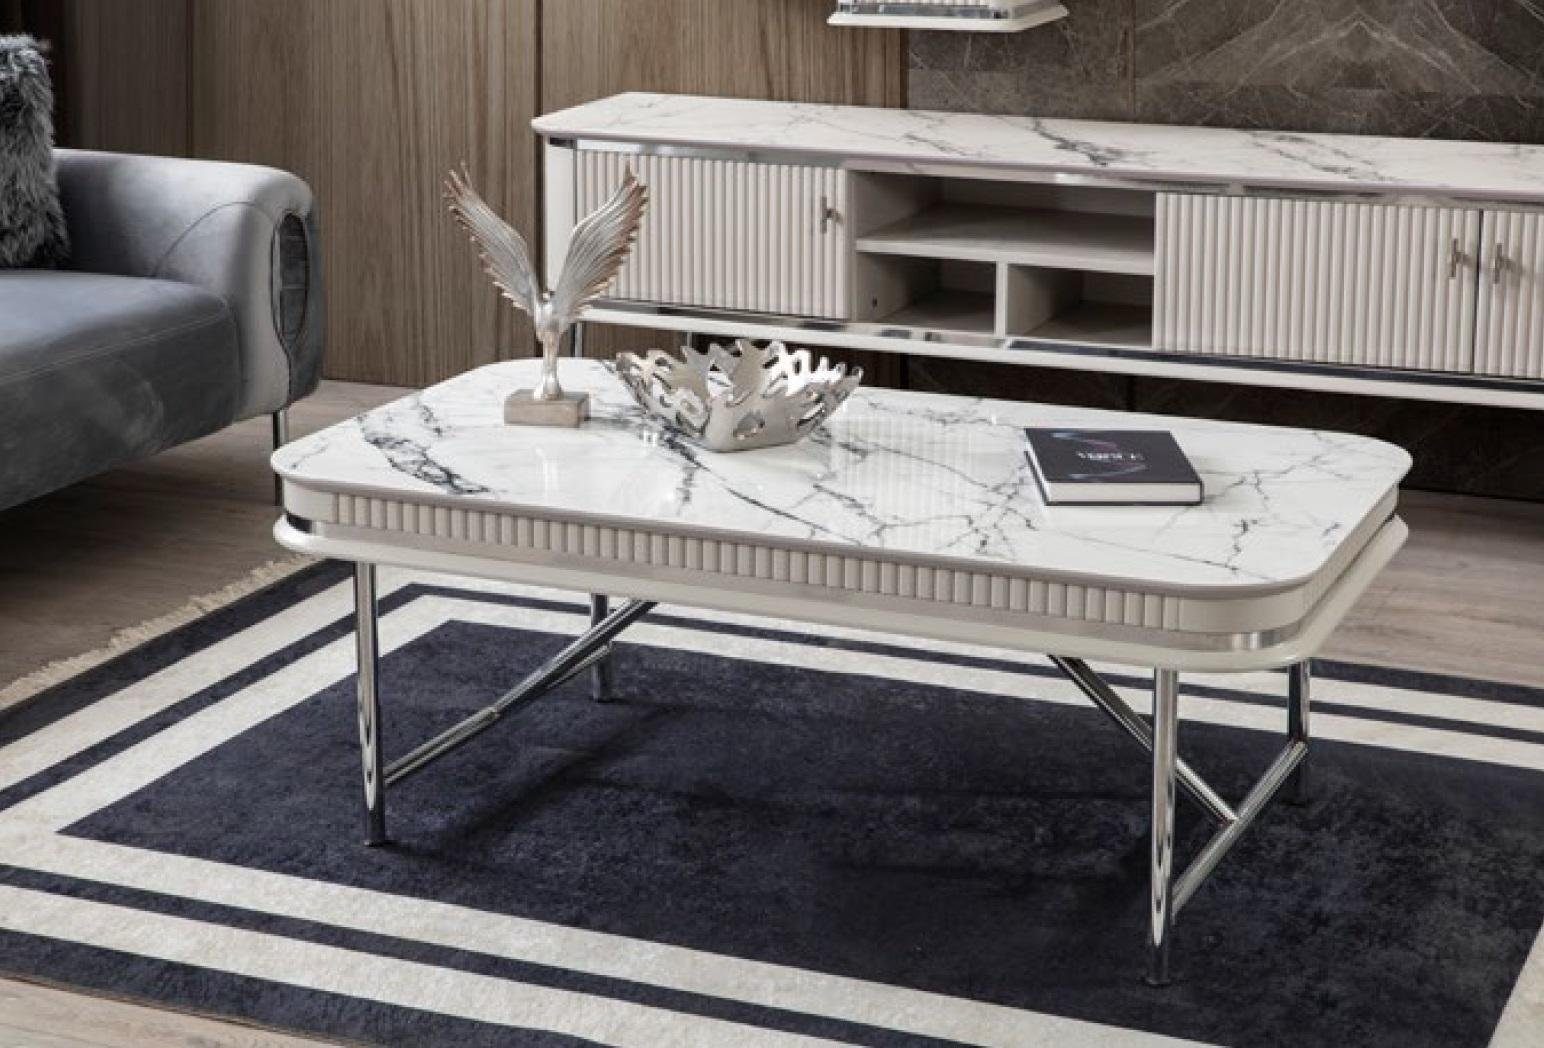 JVmoebel Couchtisch Couchtisch Tisch Design Tische Wohnzimmer Holztisch Metall Weiß